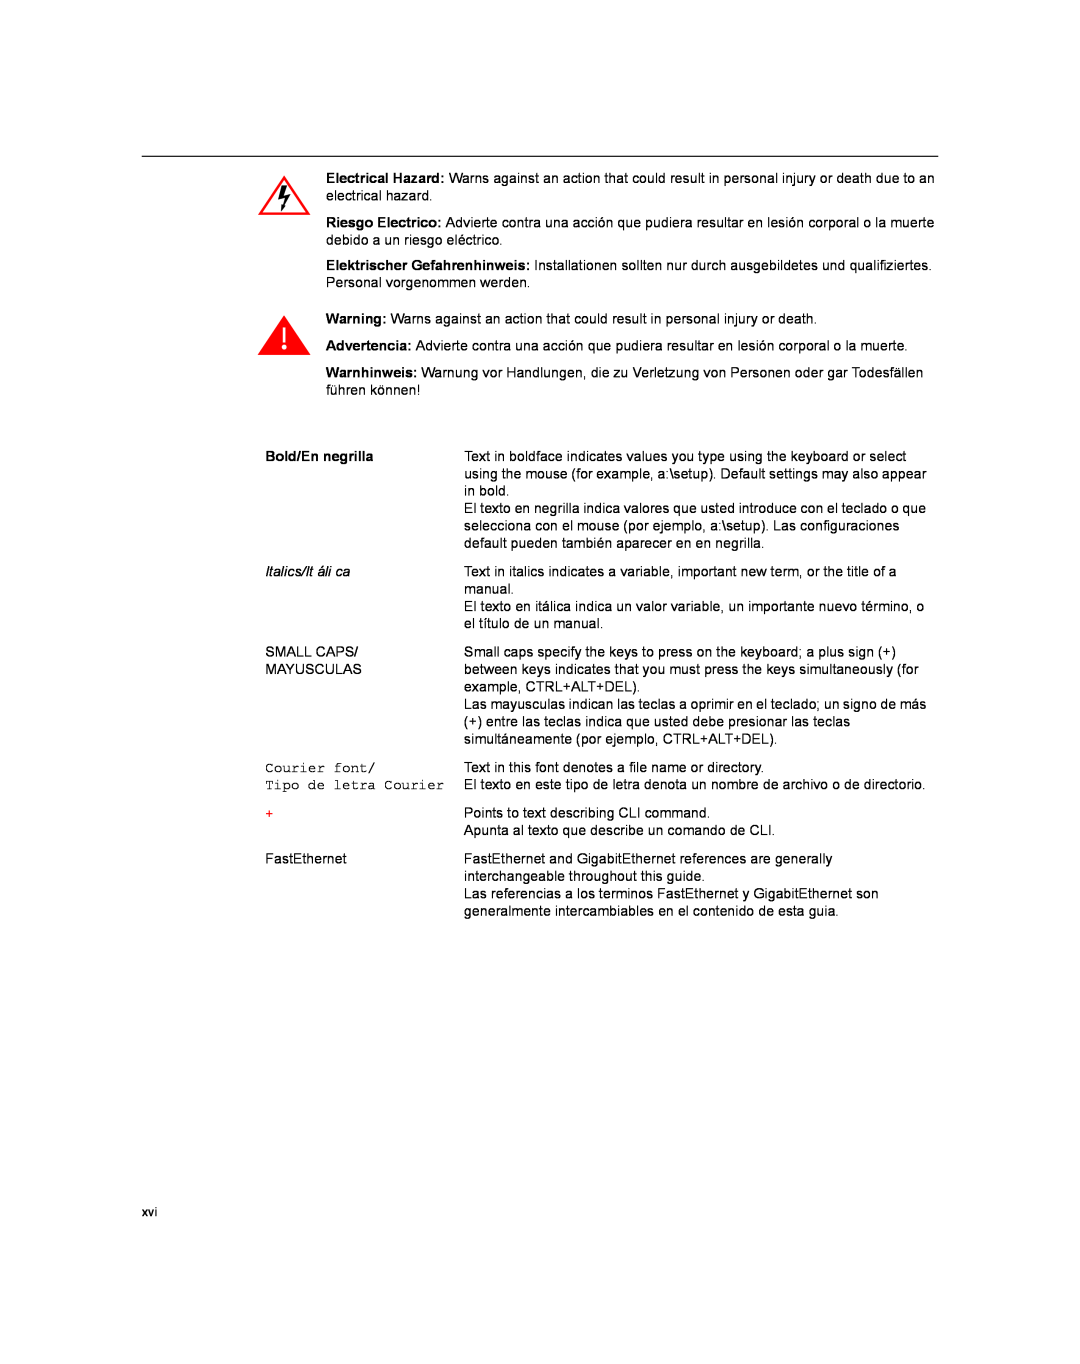 Enterasys Networks XSR-3020 manual Bold/En negrilla, Italics/It áli ca 